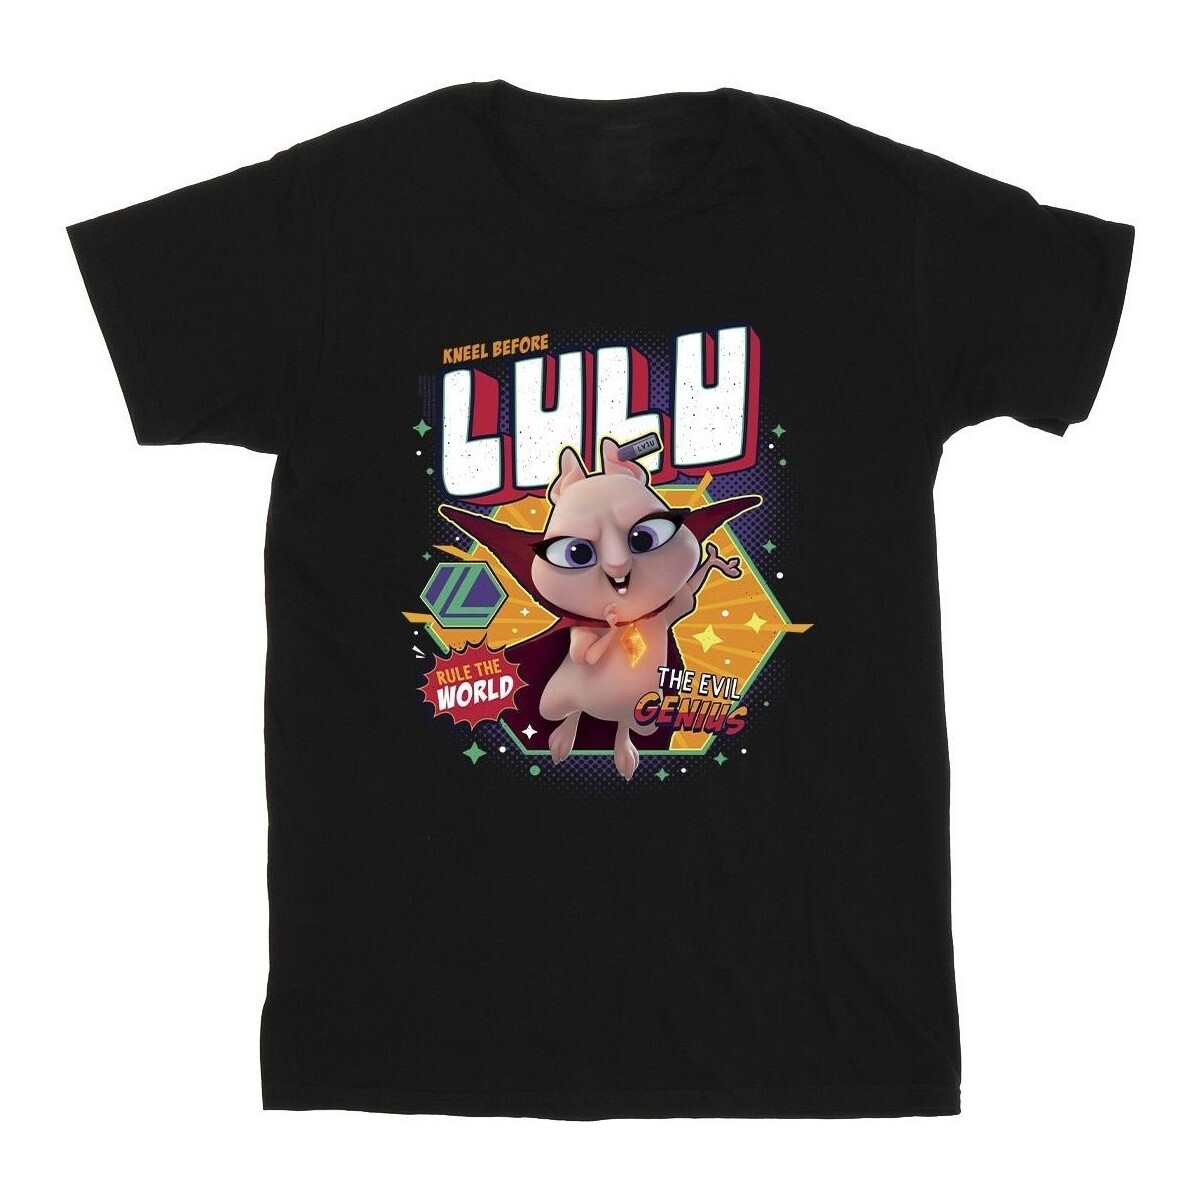 Vêtements Garçon T-shirts manches courtes Dc Comics DC League Of Super-Pets Lulu Evil Genius Noir